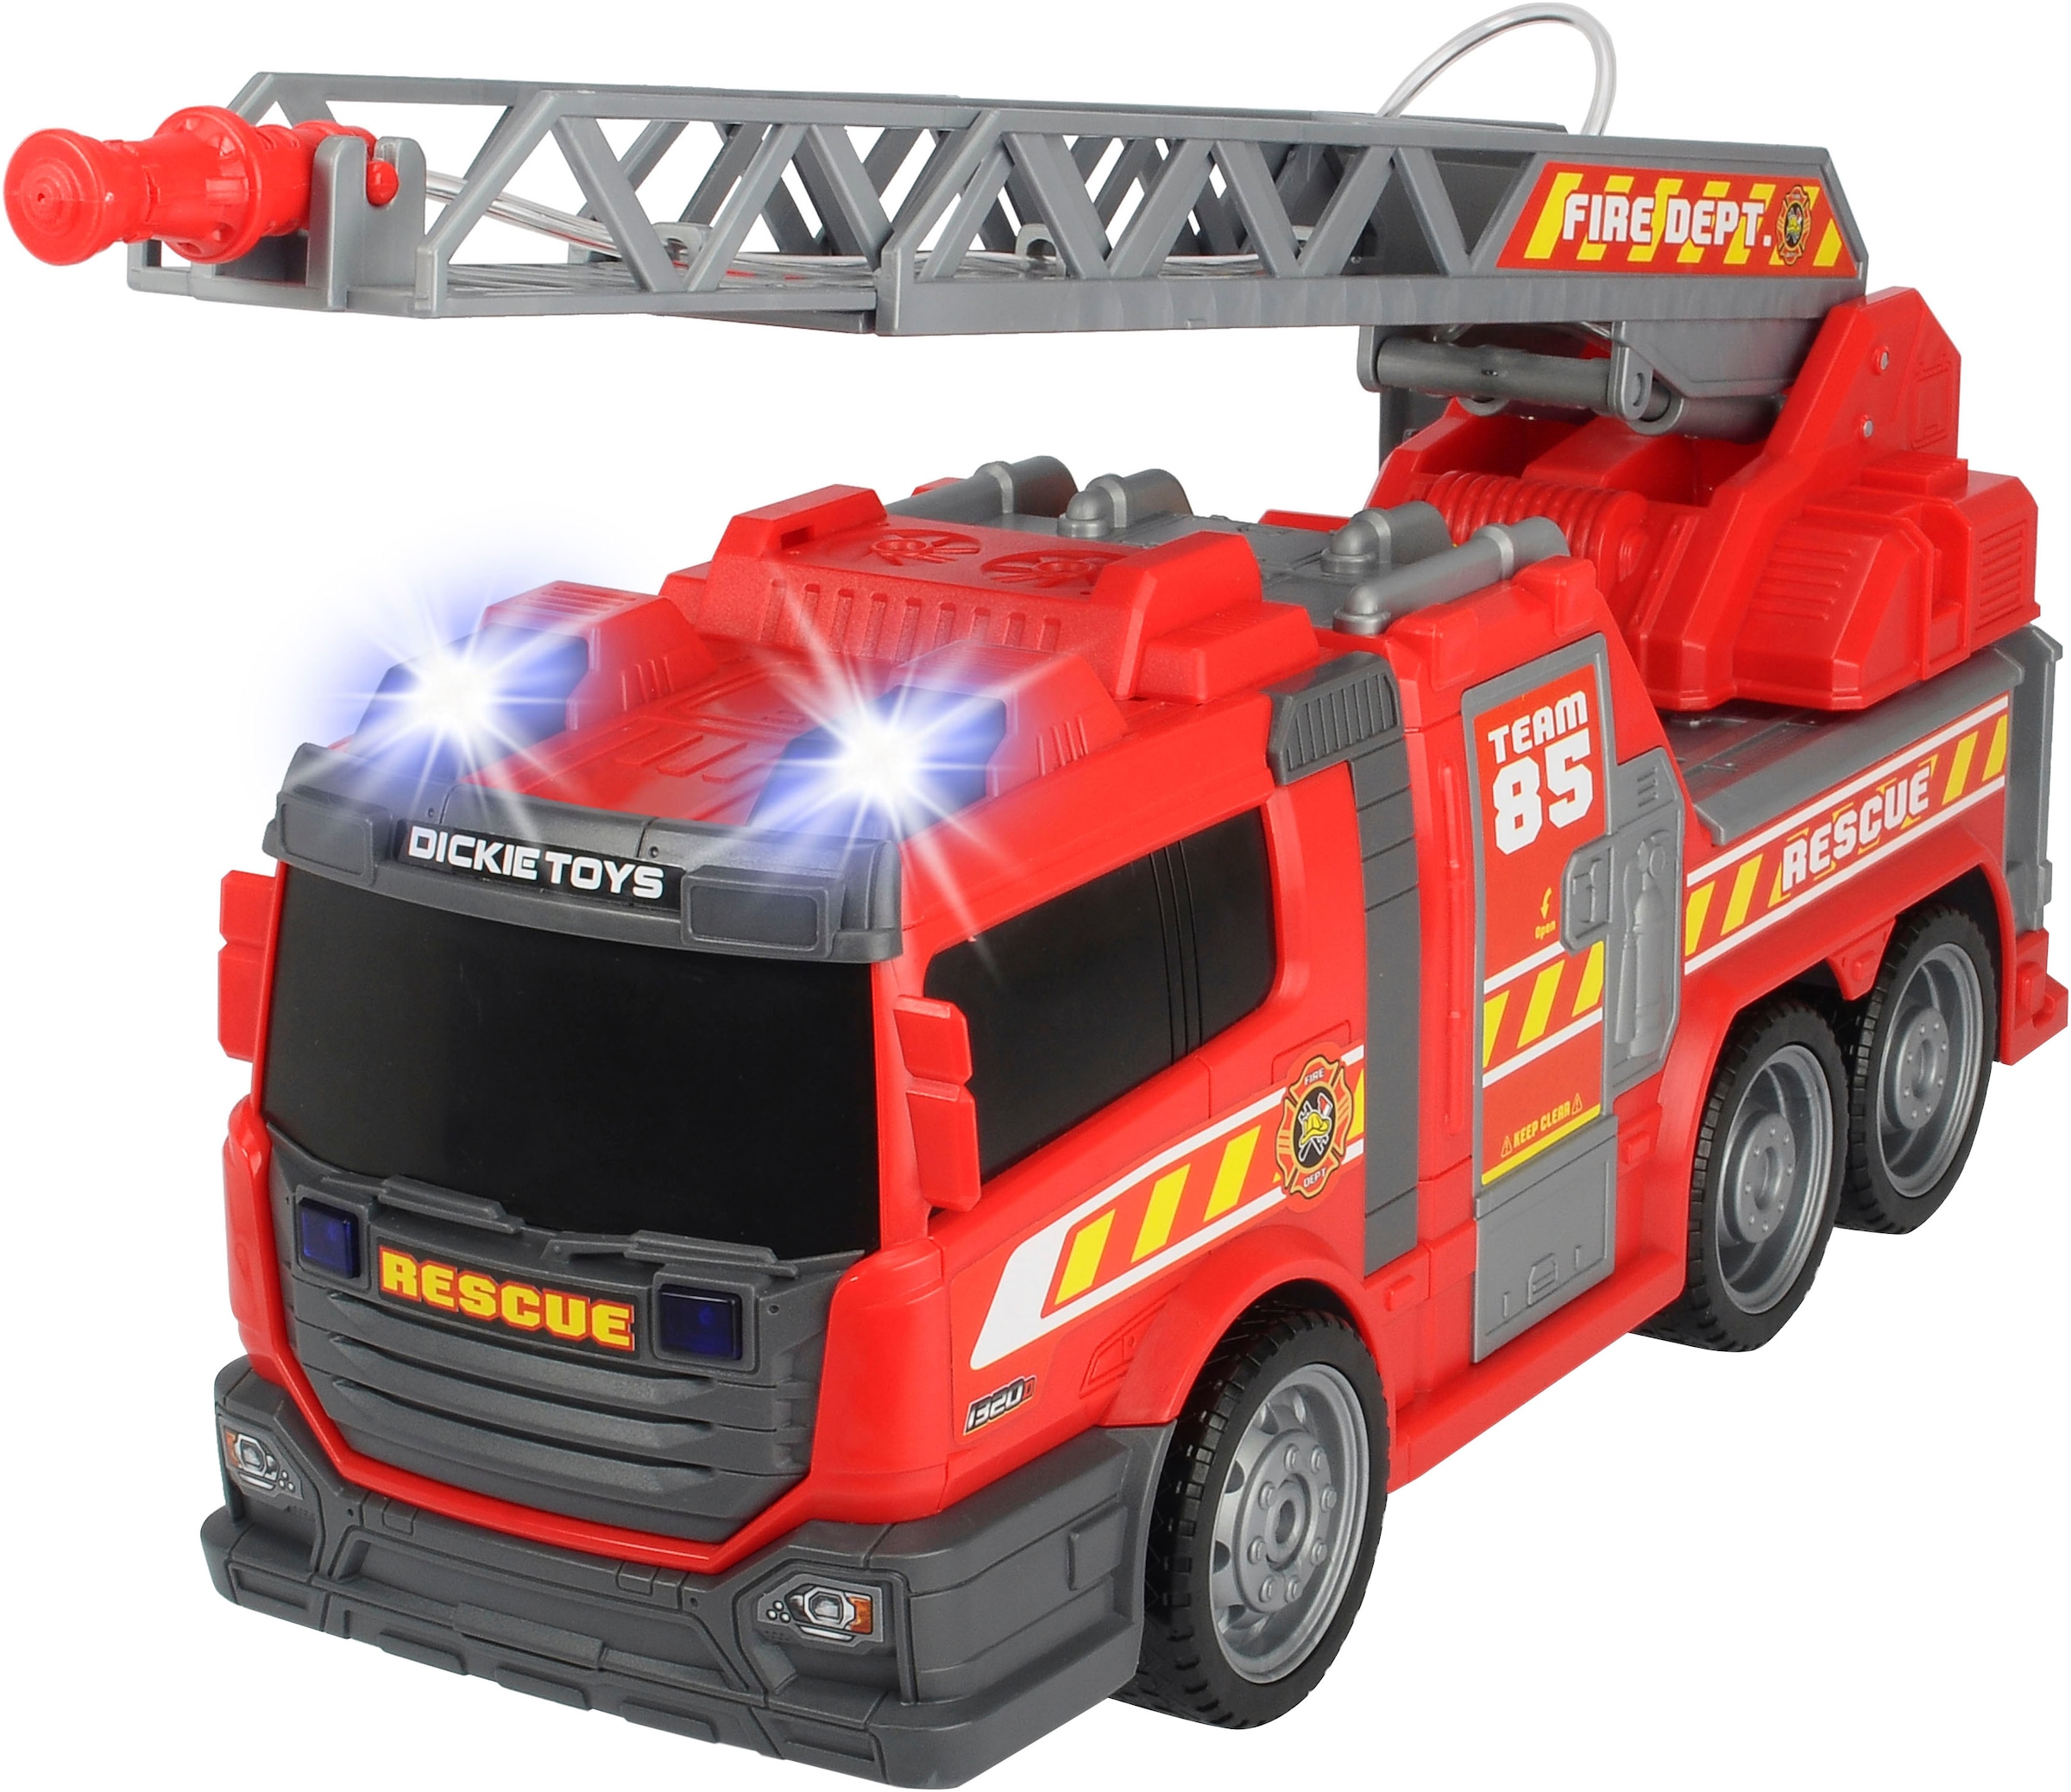 Spielzeug-Feuerwehr »Fire Fighter - Feuerwehrauto«, mit Wasserspritze